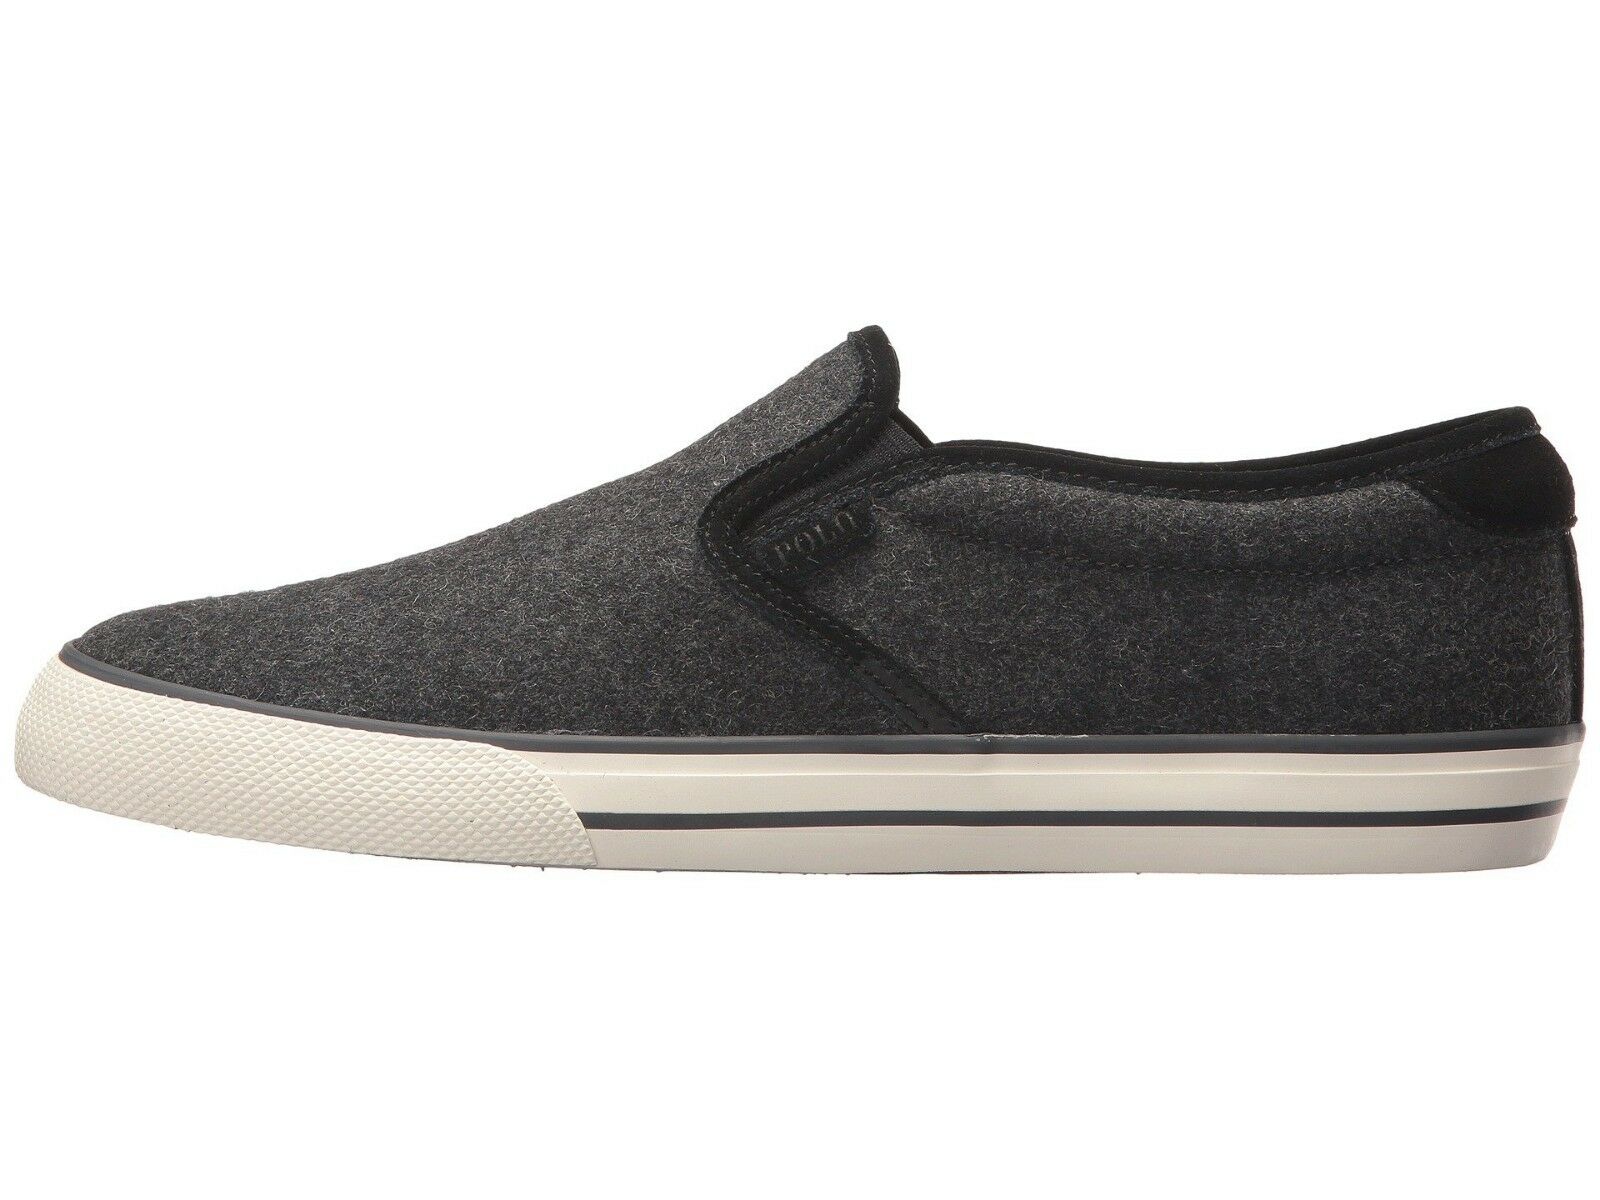 Polo Ralph Lauren Men's Vaughn slip-on II Sneaker shoes, Charcoal Heather SZ 9 D - image 4 of 4